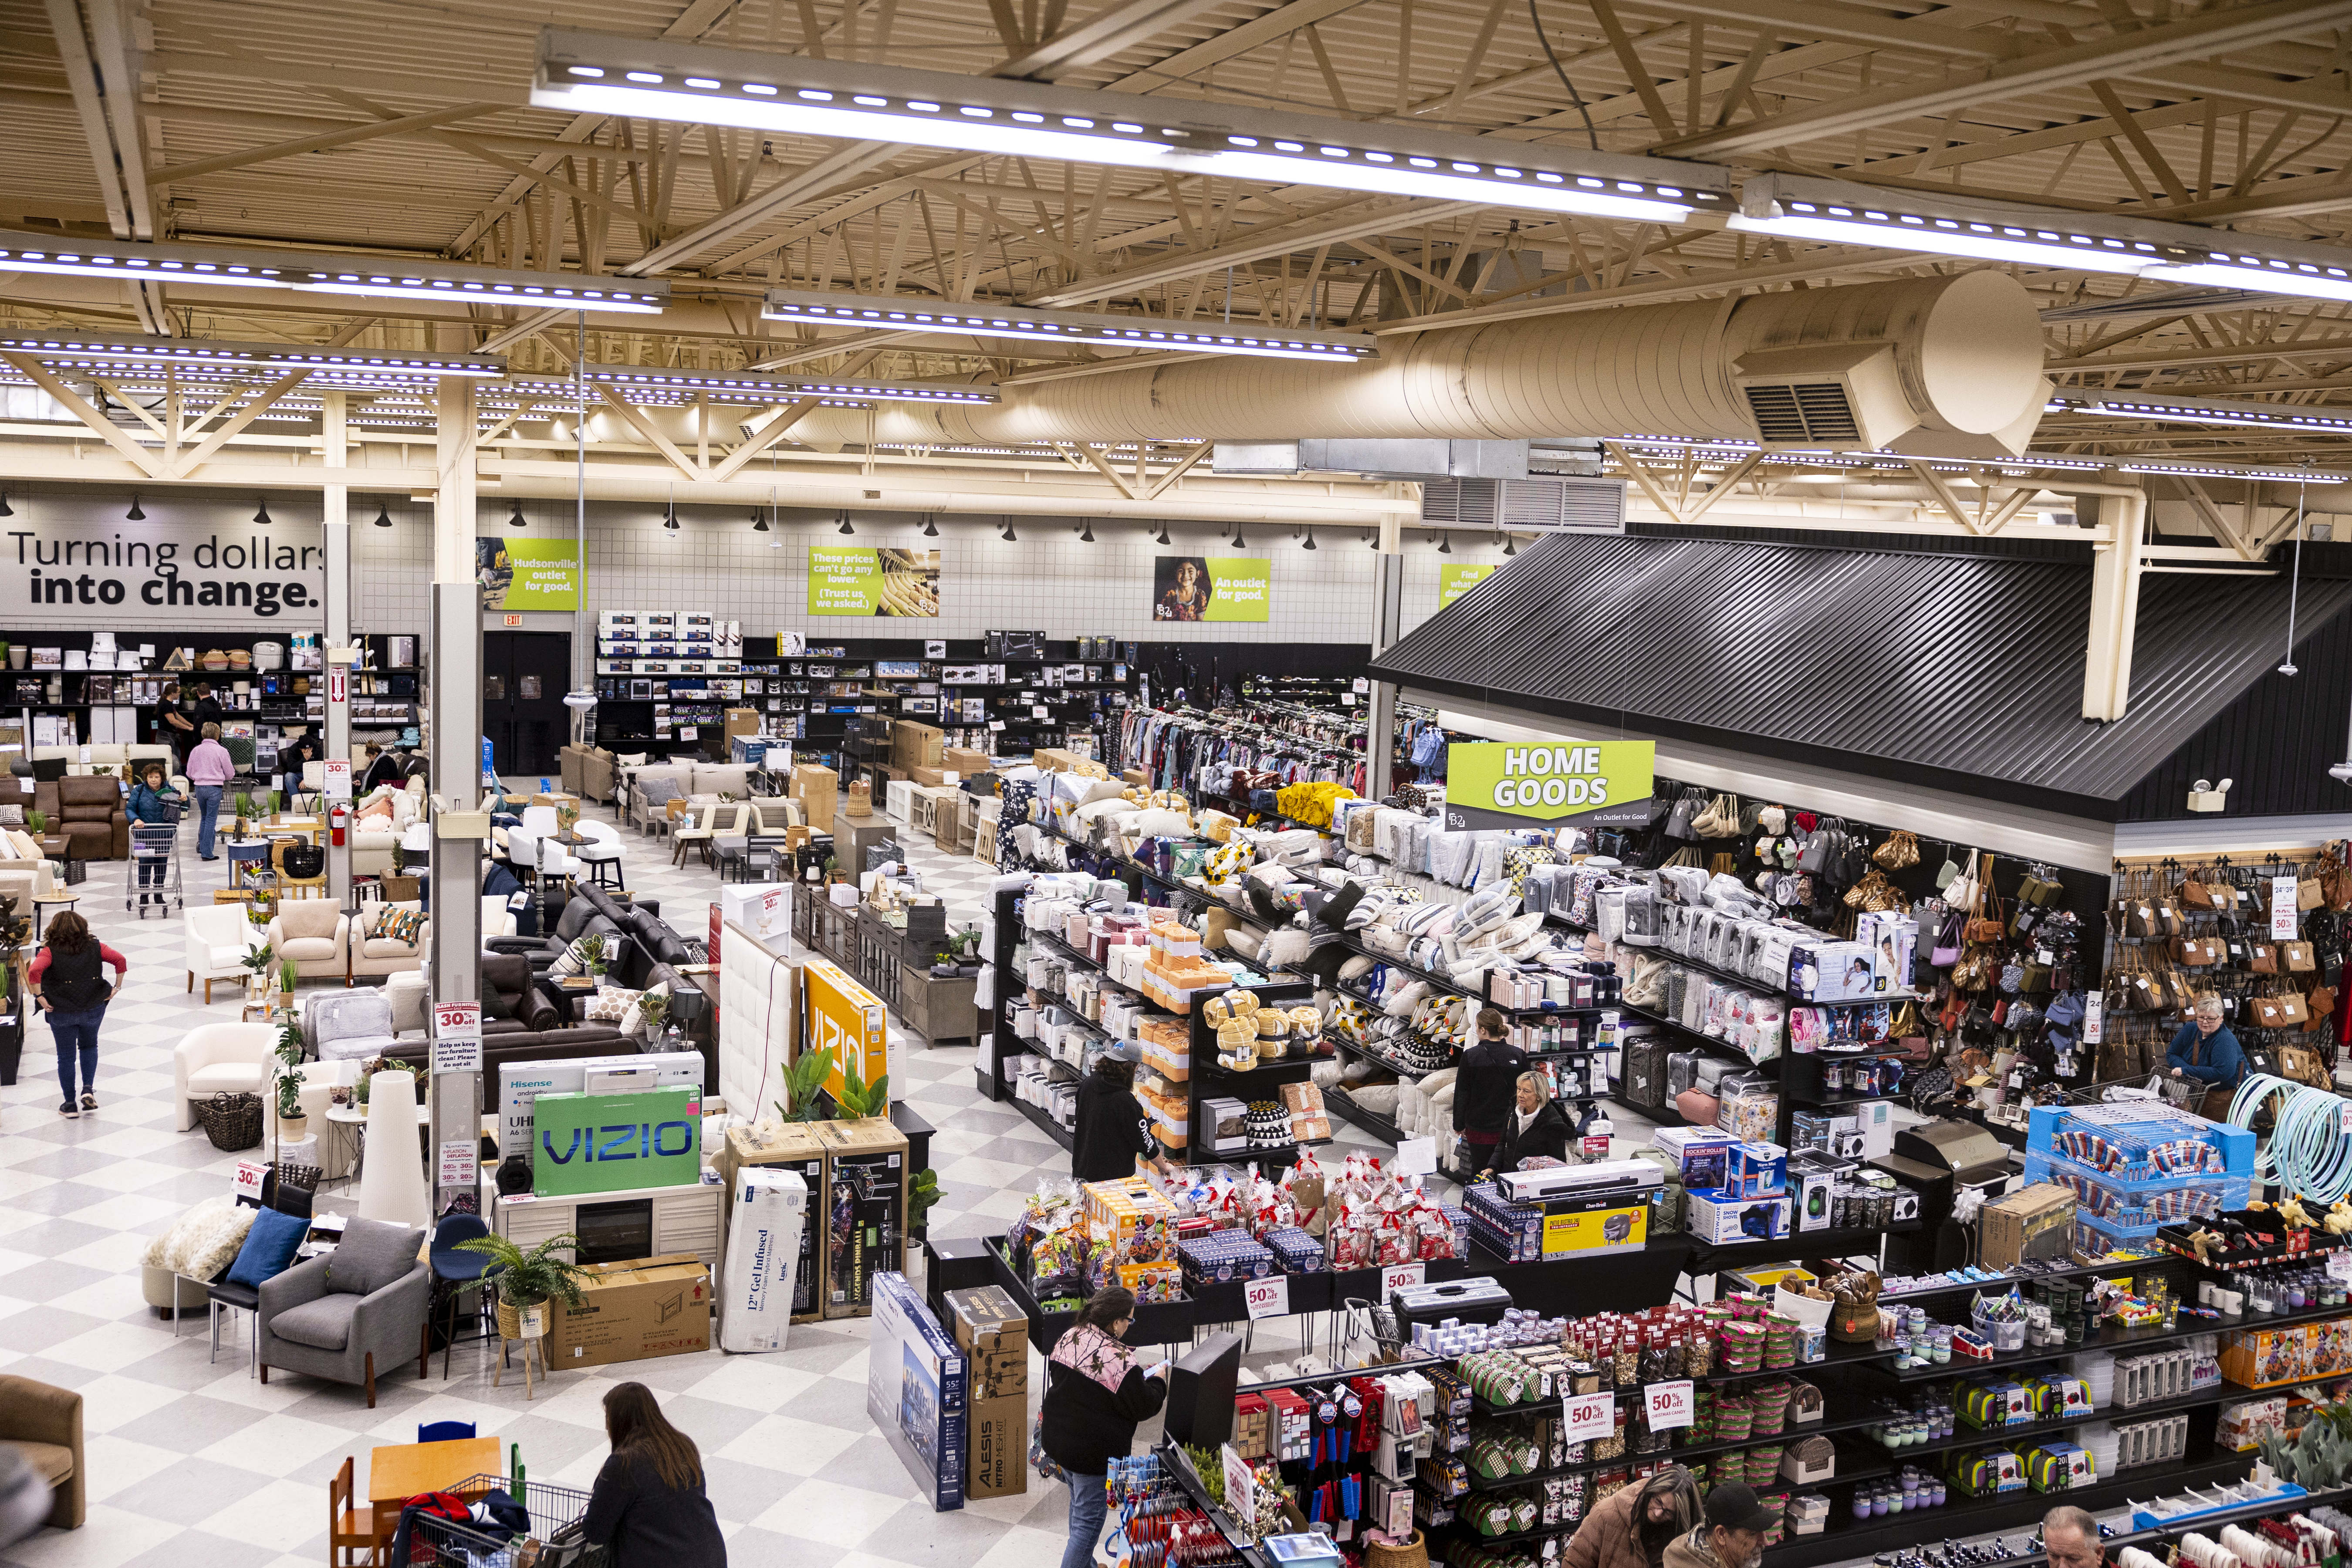 Walmart Overstock Store in Photos